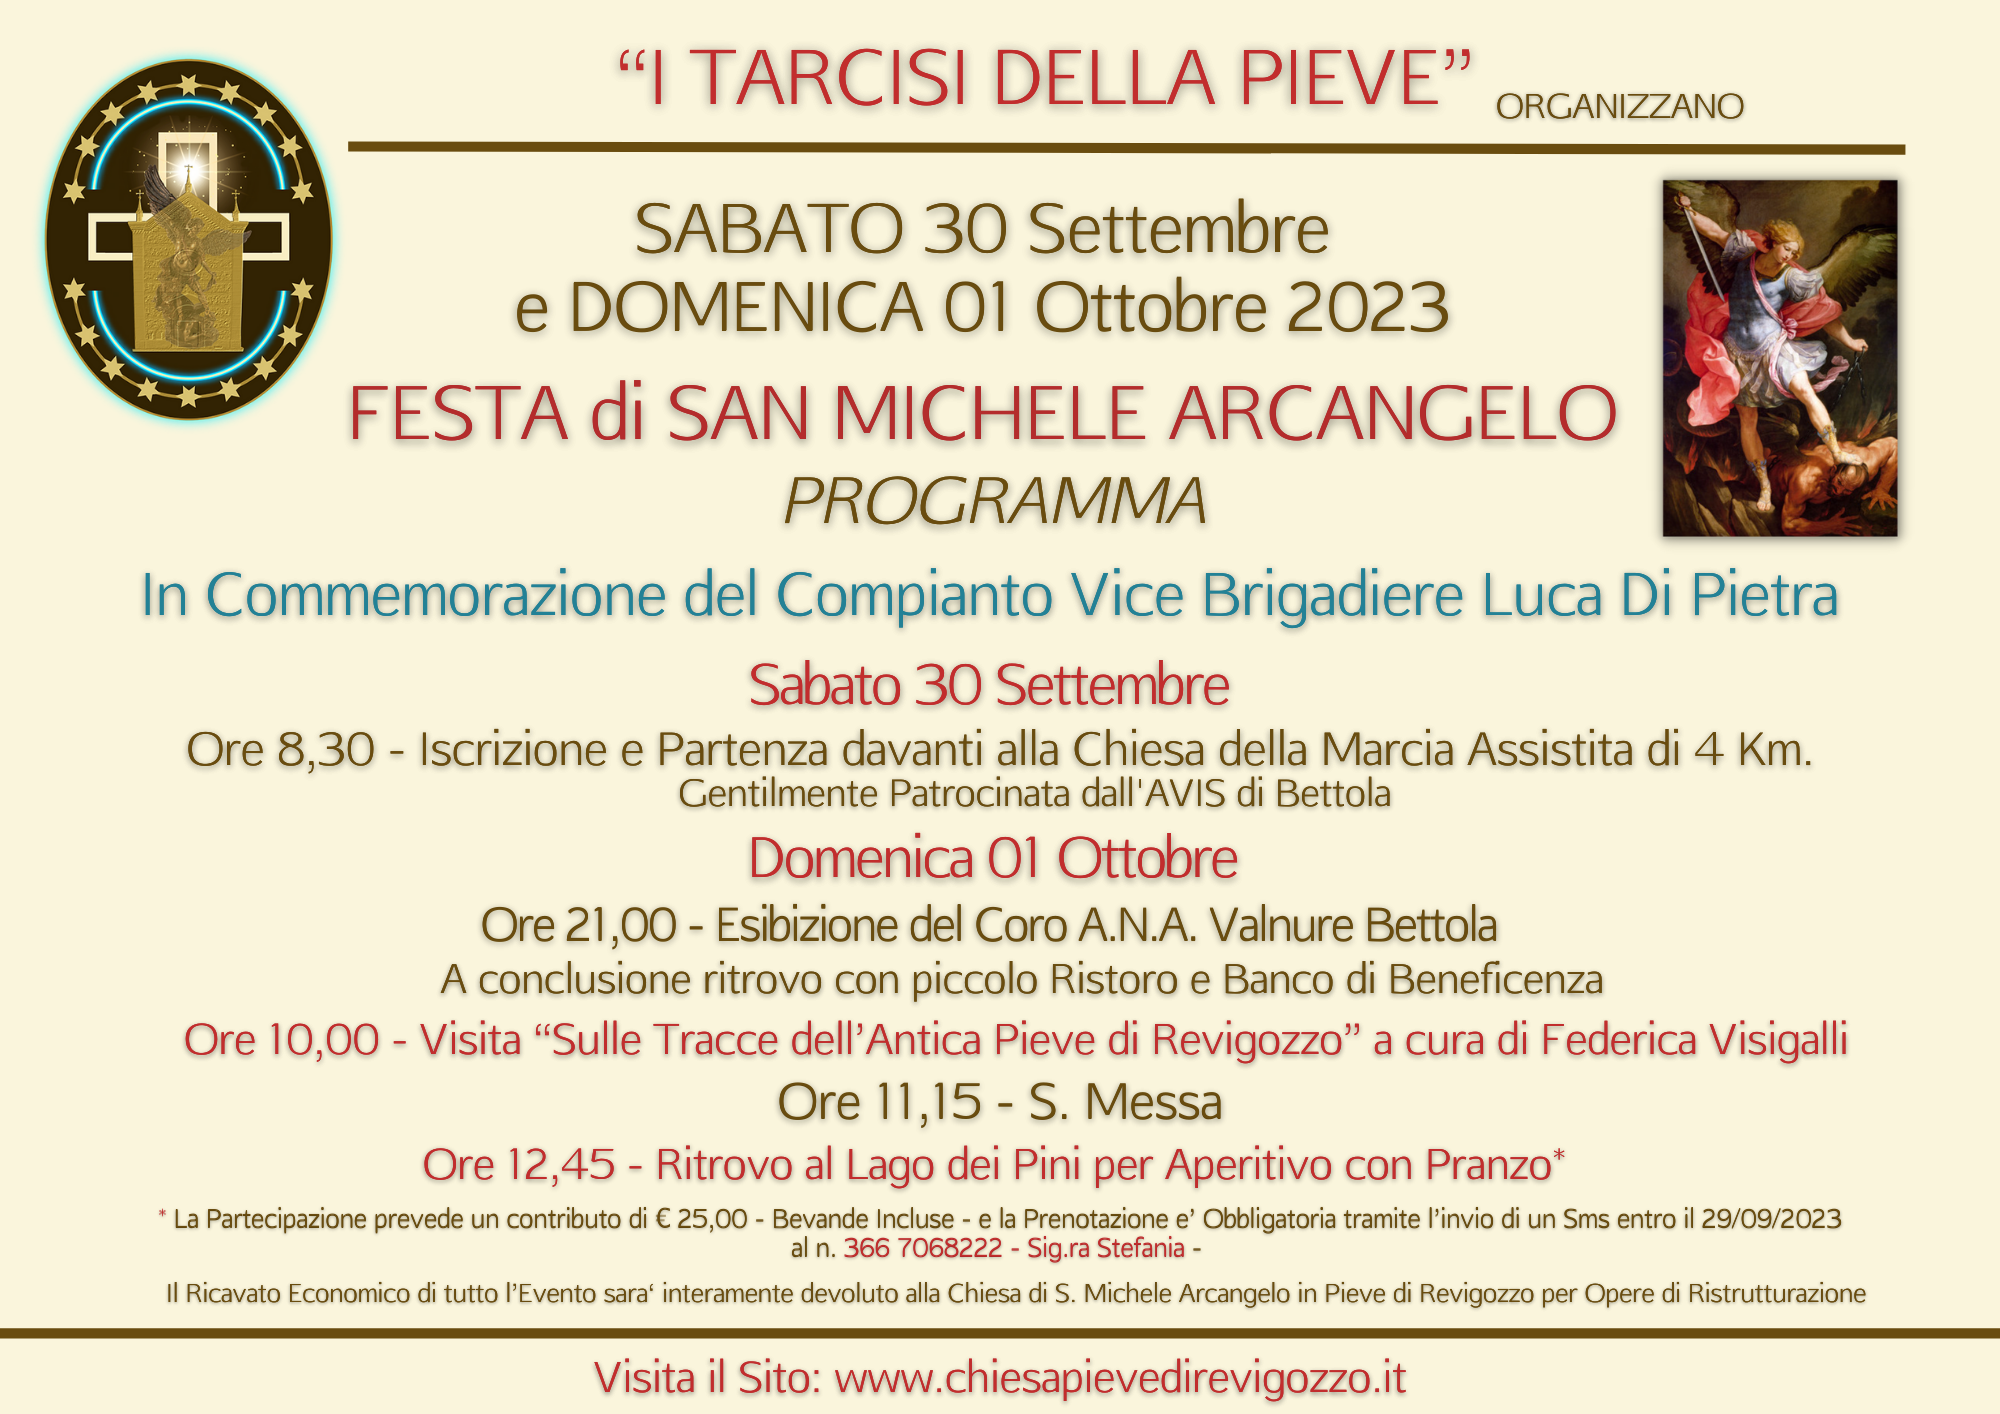 SABATO 30 SETTEMBRE e DOMENICA 01 OTTOBRE 2023 - Si festeggia San Michele Arcangelo